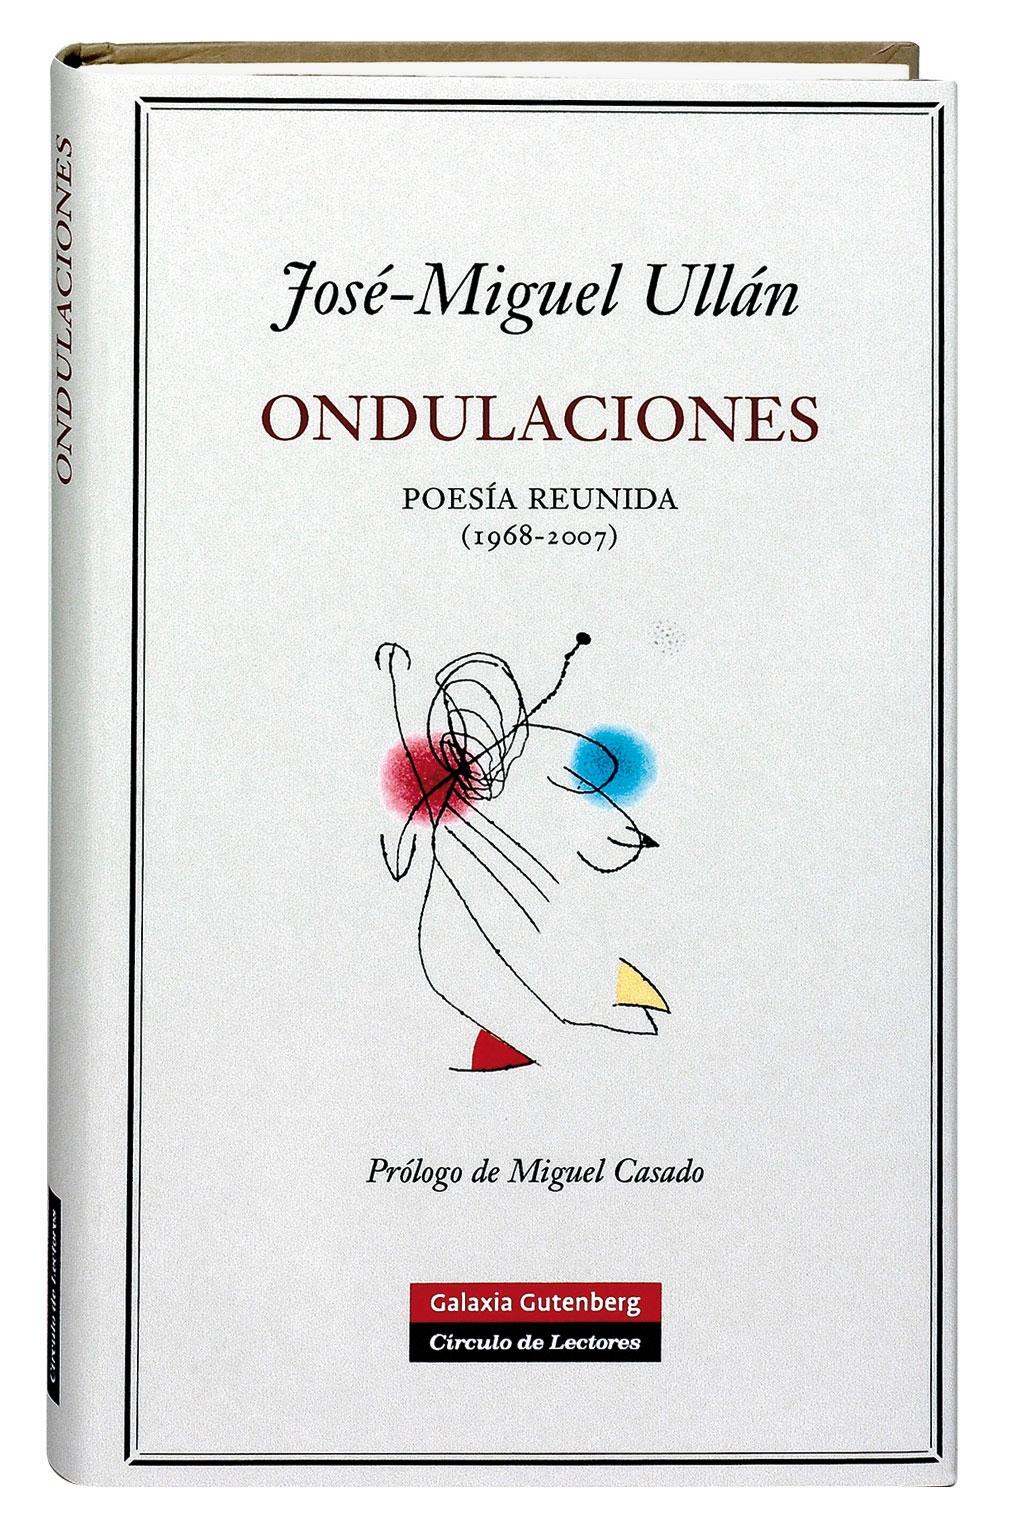 Ondulaciones "Poesía reunida 1968-2007". 